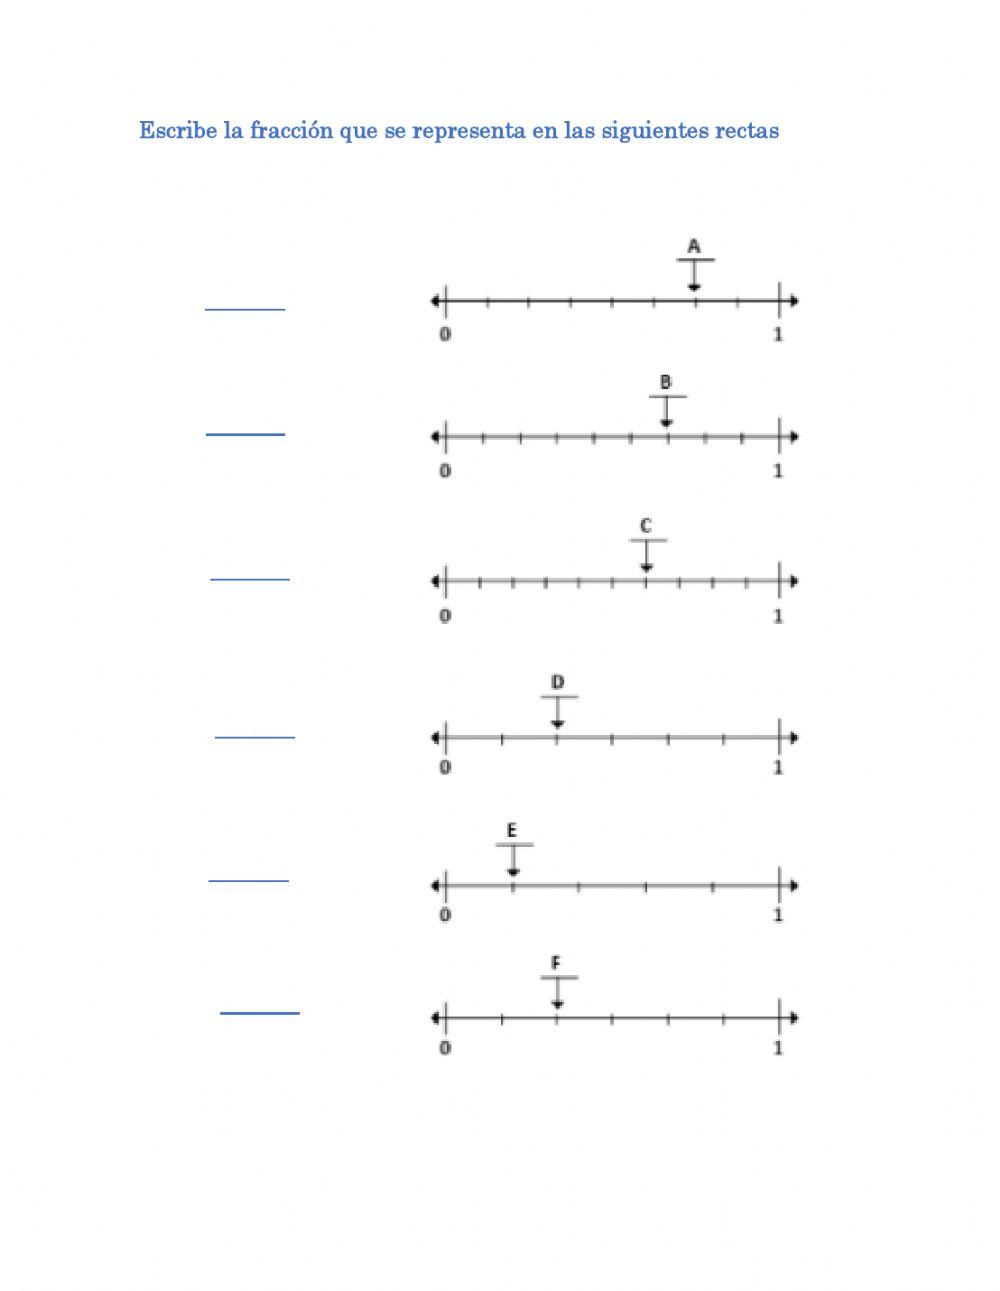 Representación gráfica de fracciones